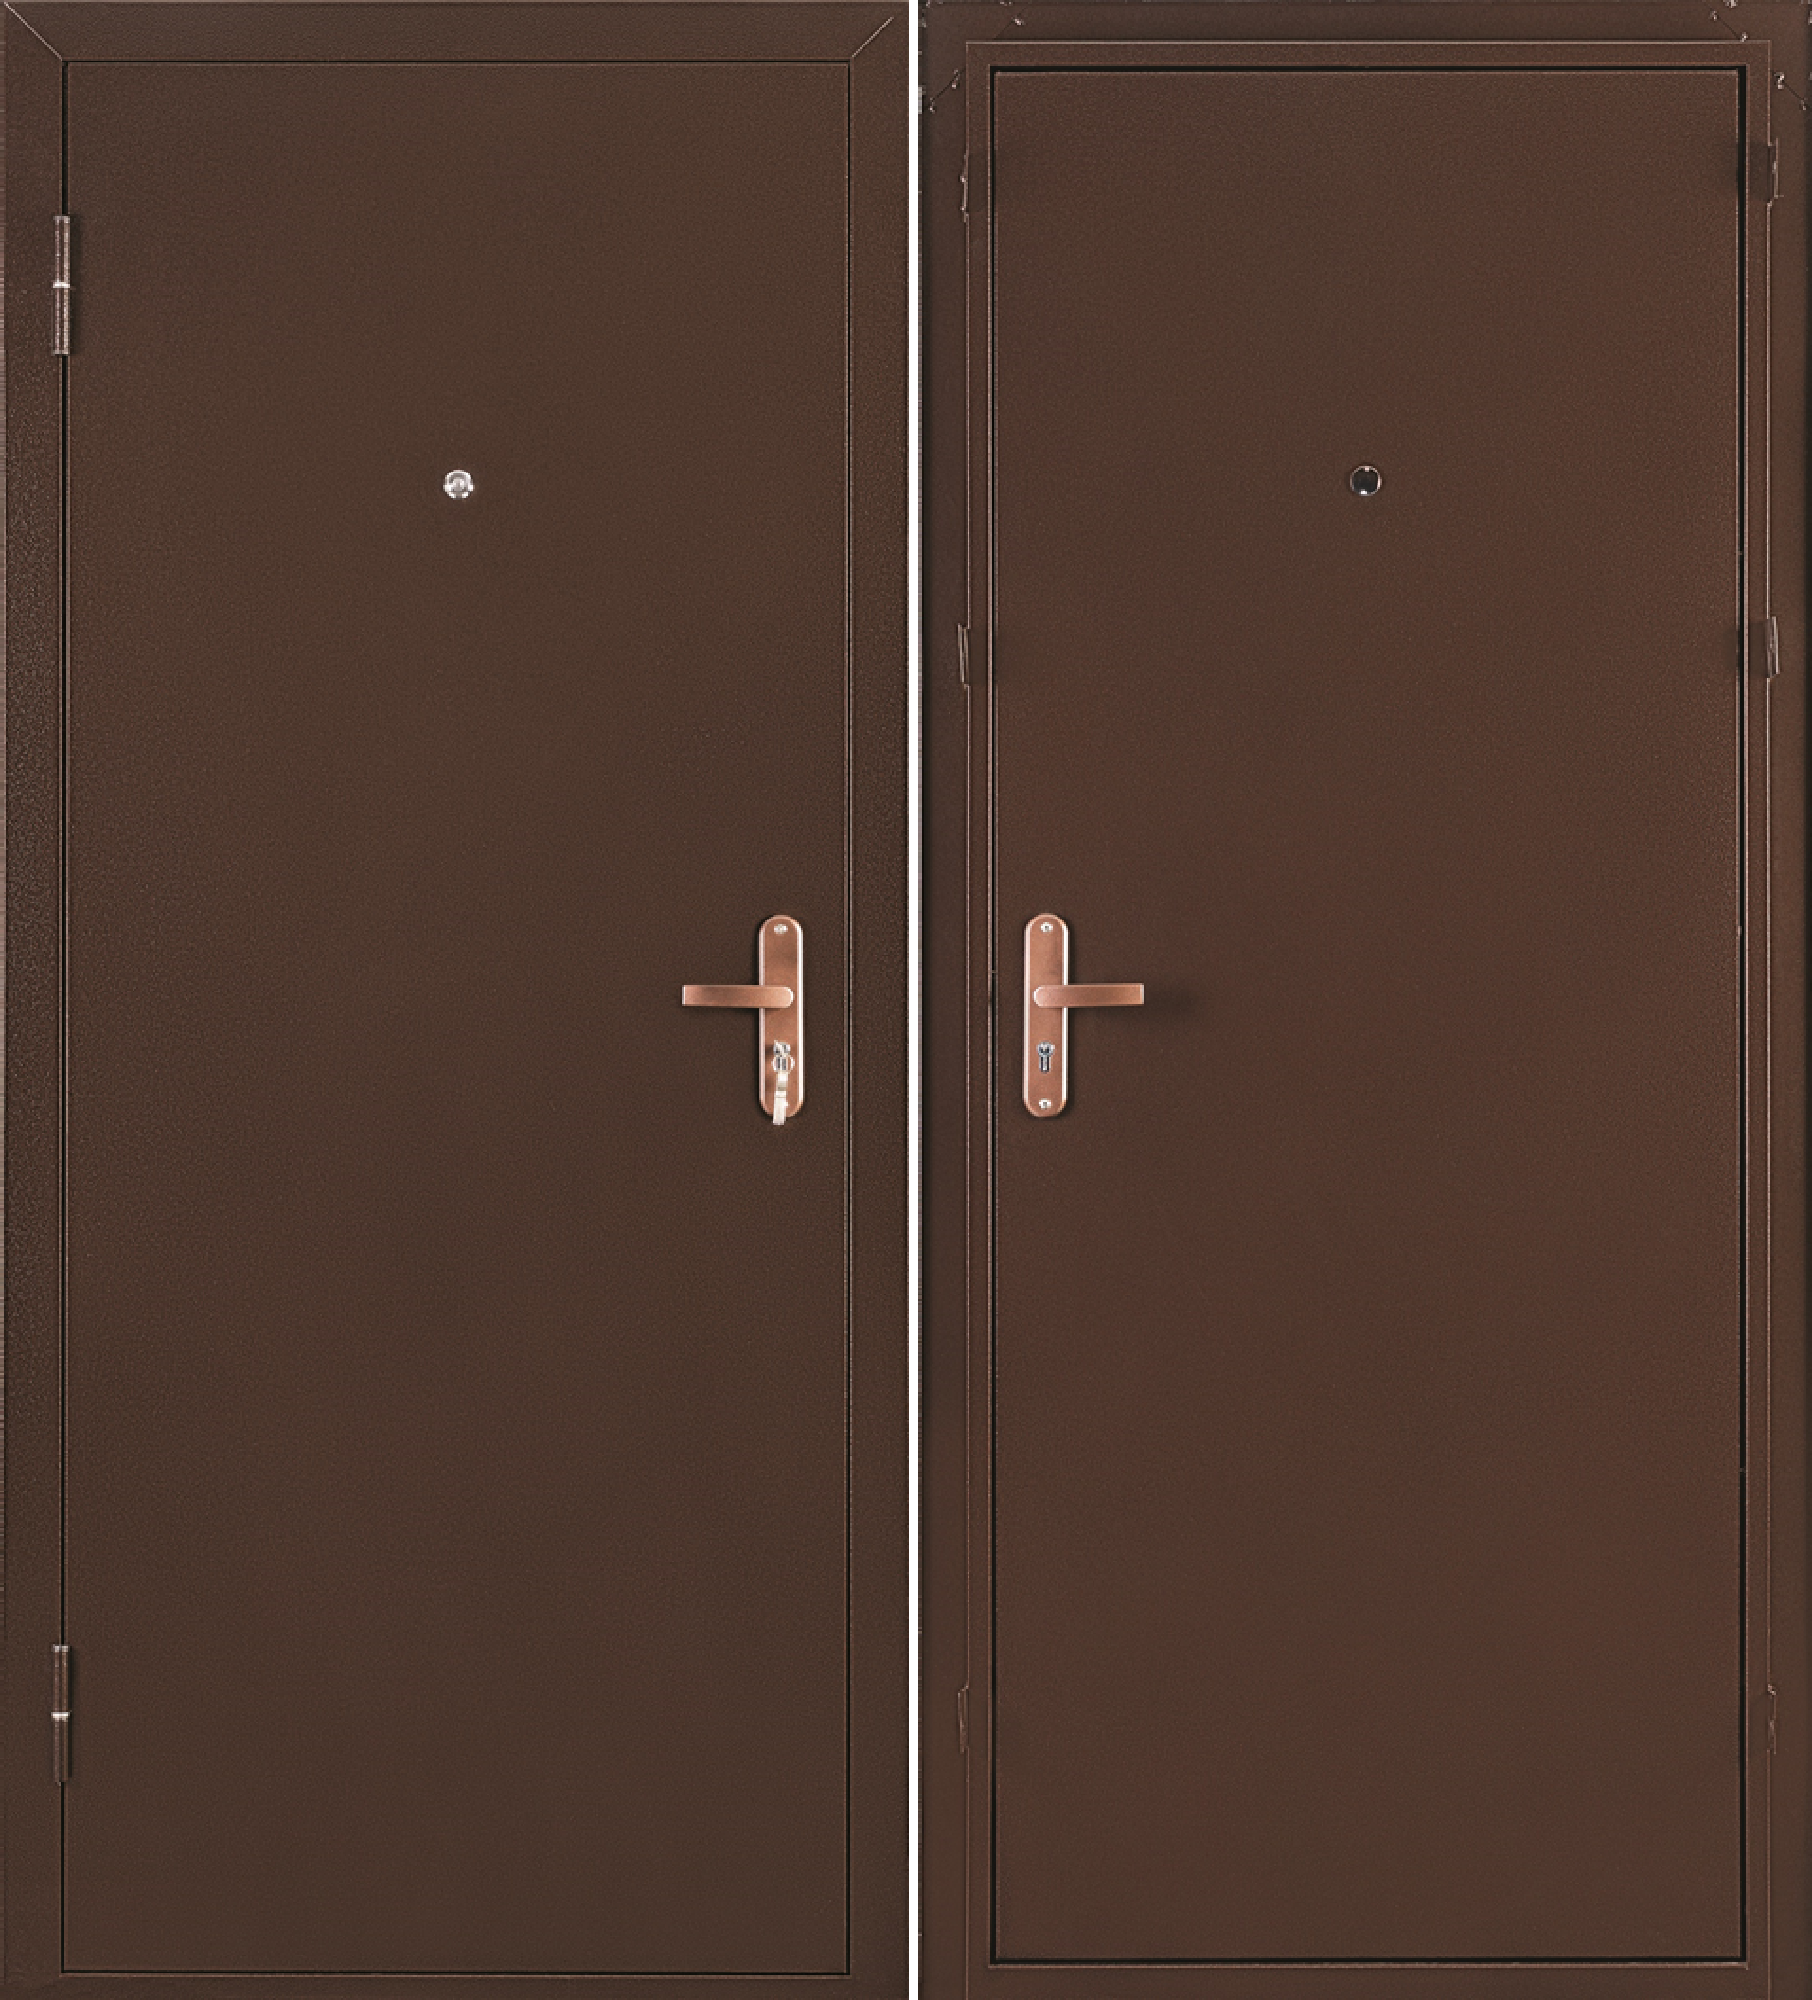 Промет двери. Дверь метал. Профи BMD 2050/850/R металл/металл антик медь. Дверь входная металлическая DOORHAN эко 880 мм левая. Дверь Промет профи BMD. Дверь метал. Профи ВМД 2050*850 правая Промет (мет/мет).